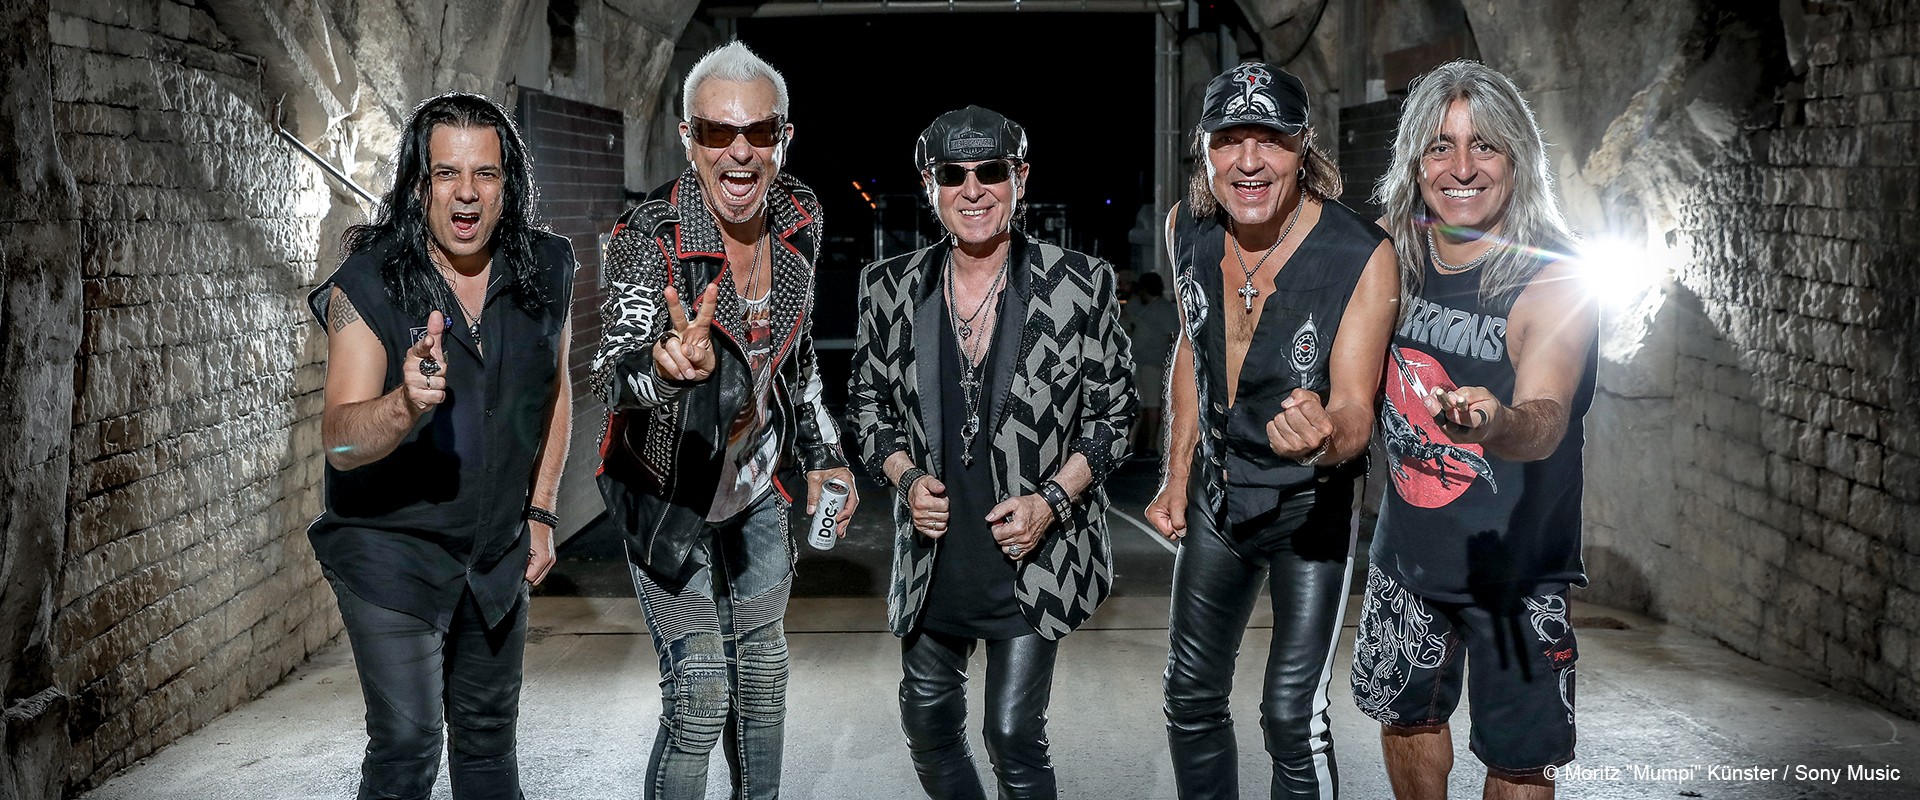 Musikvideo zu Scorpions "Rock Believer"